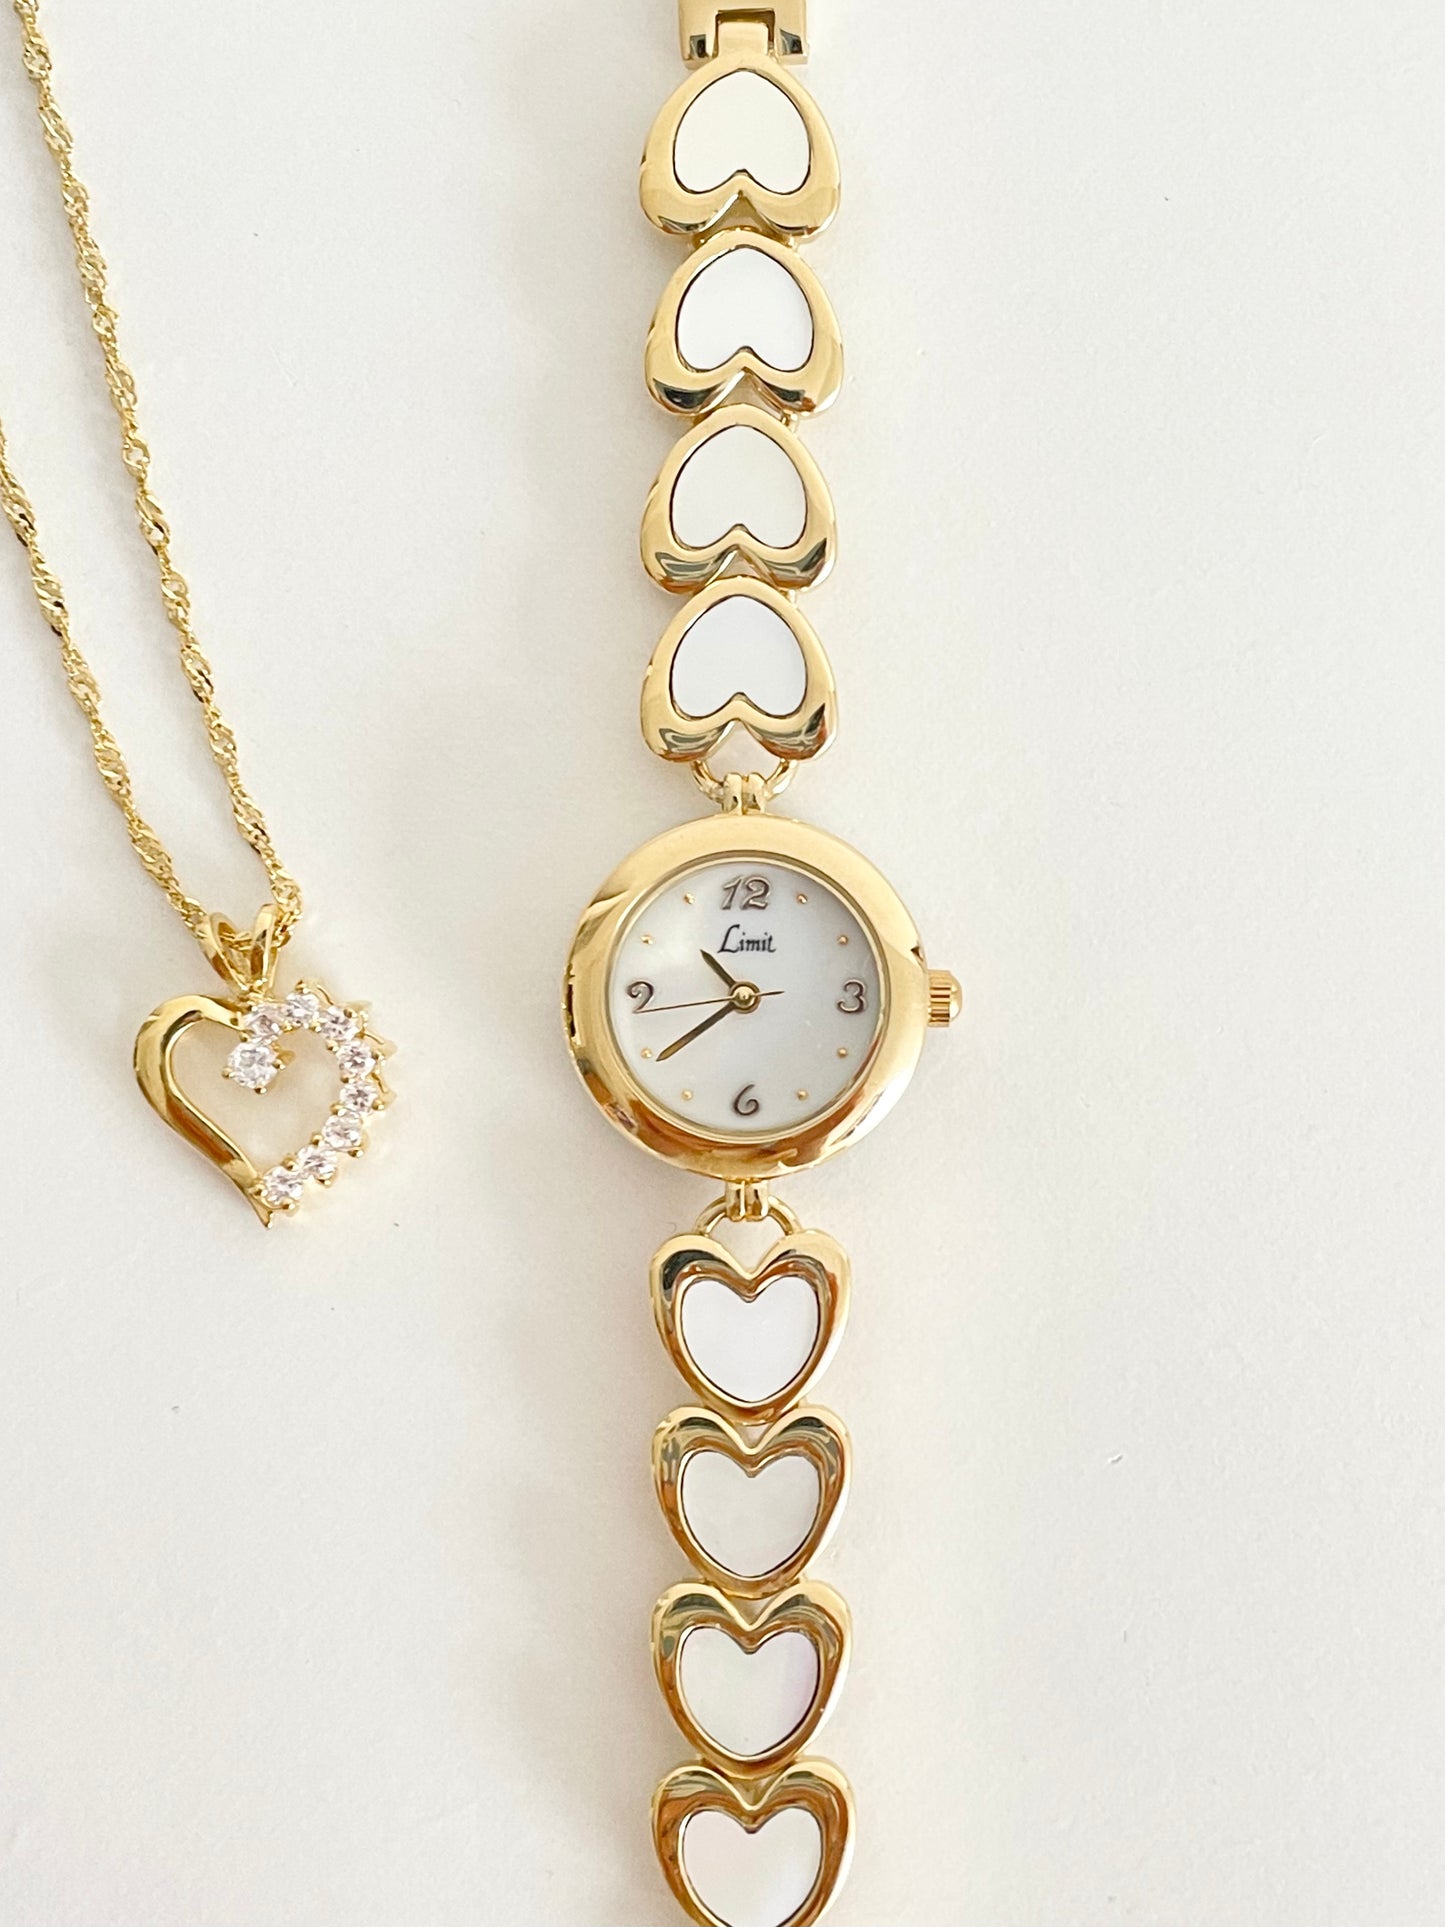 The Valentine Watch & Necklace Set